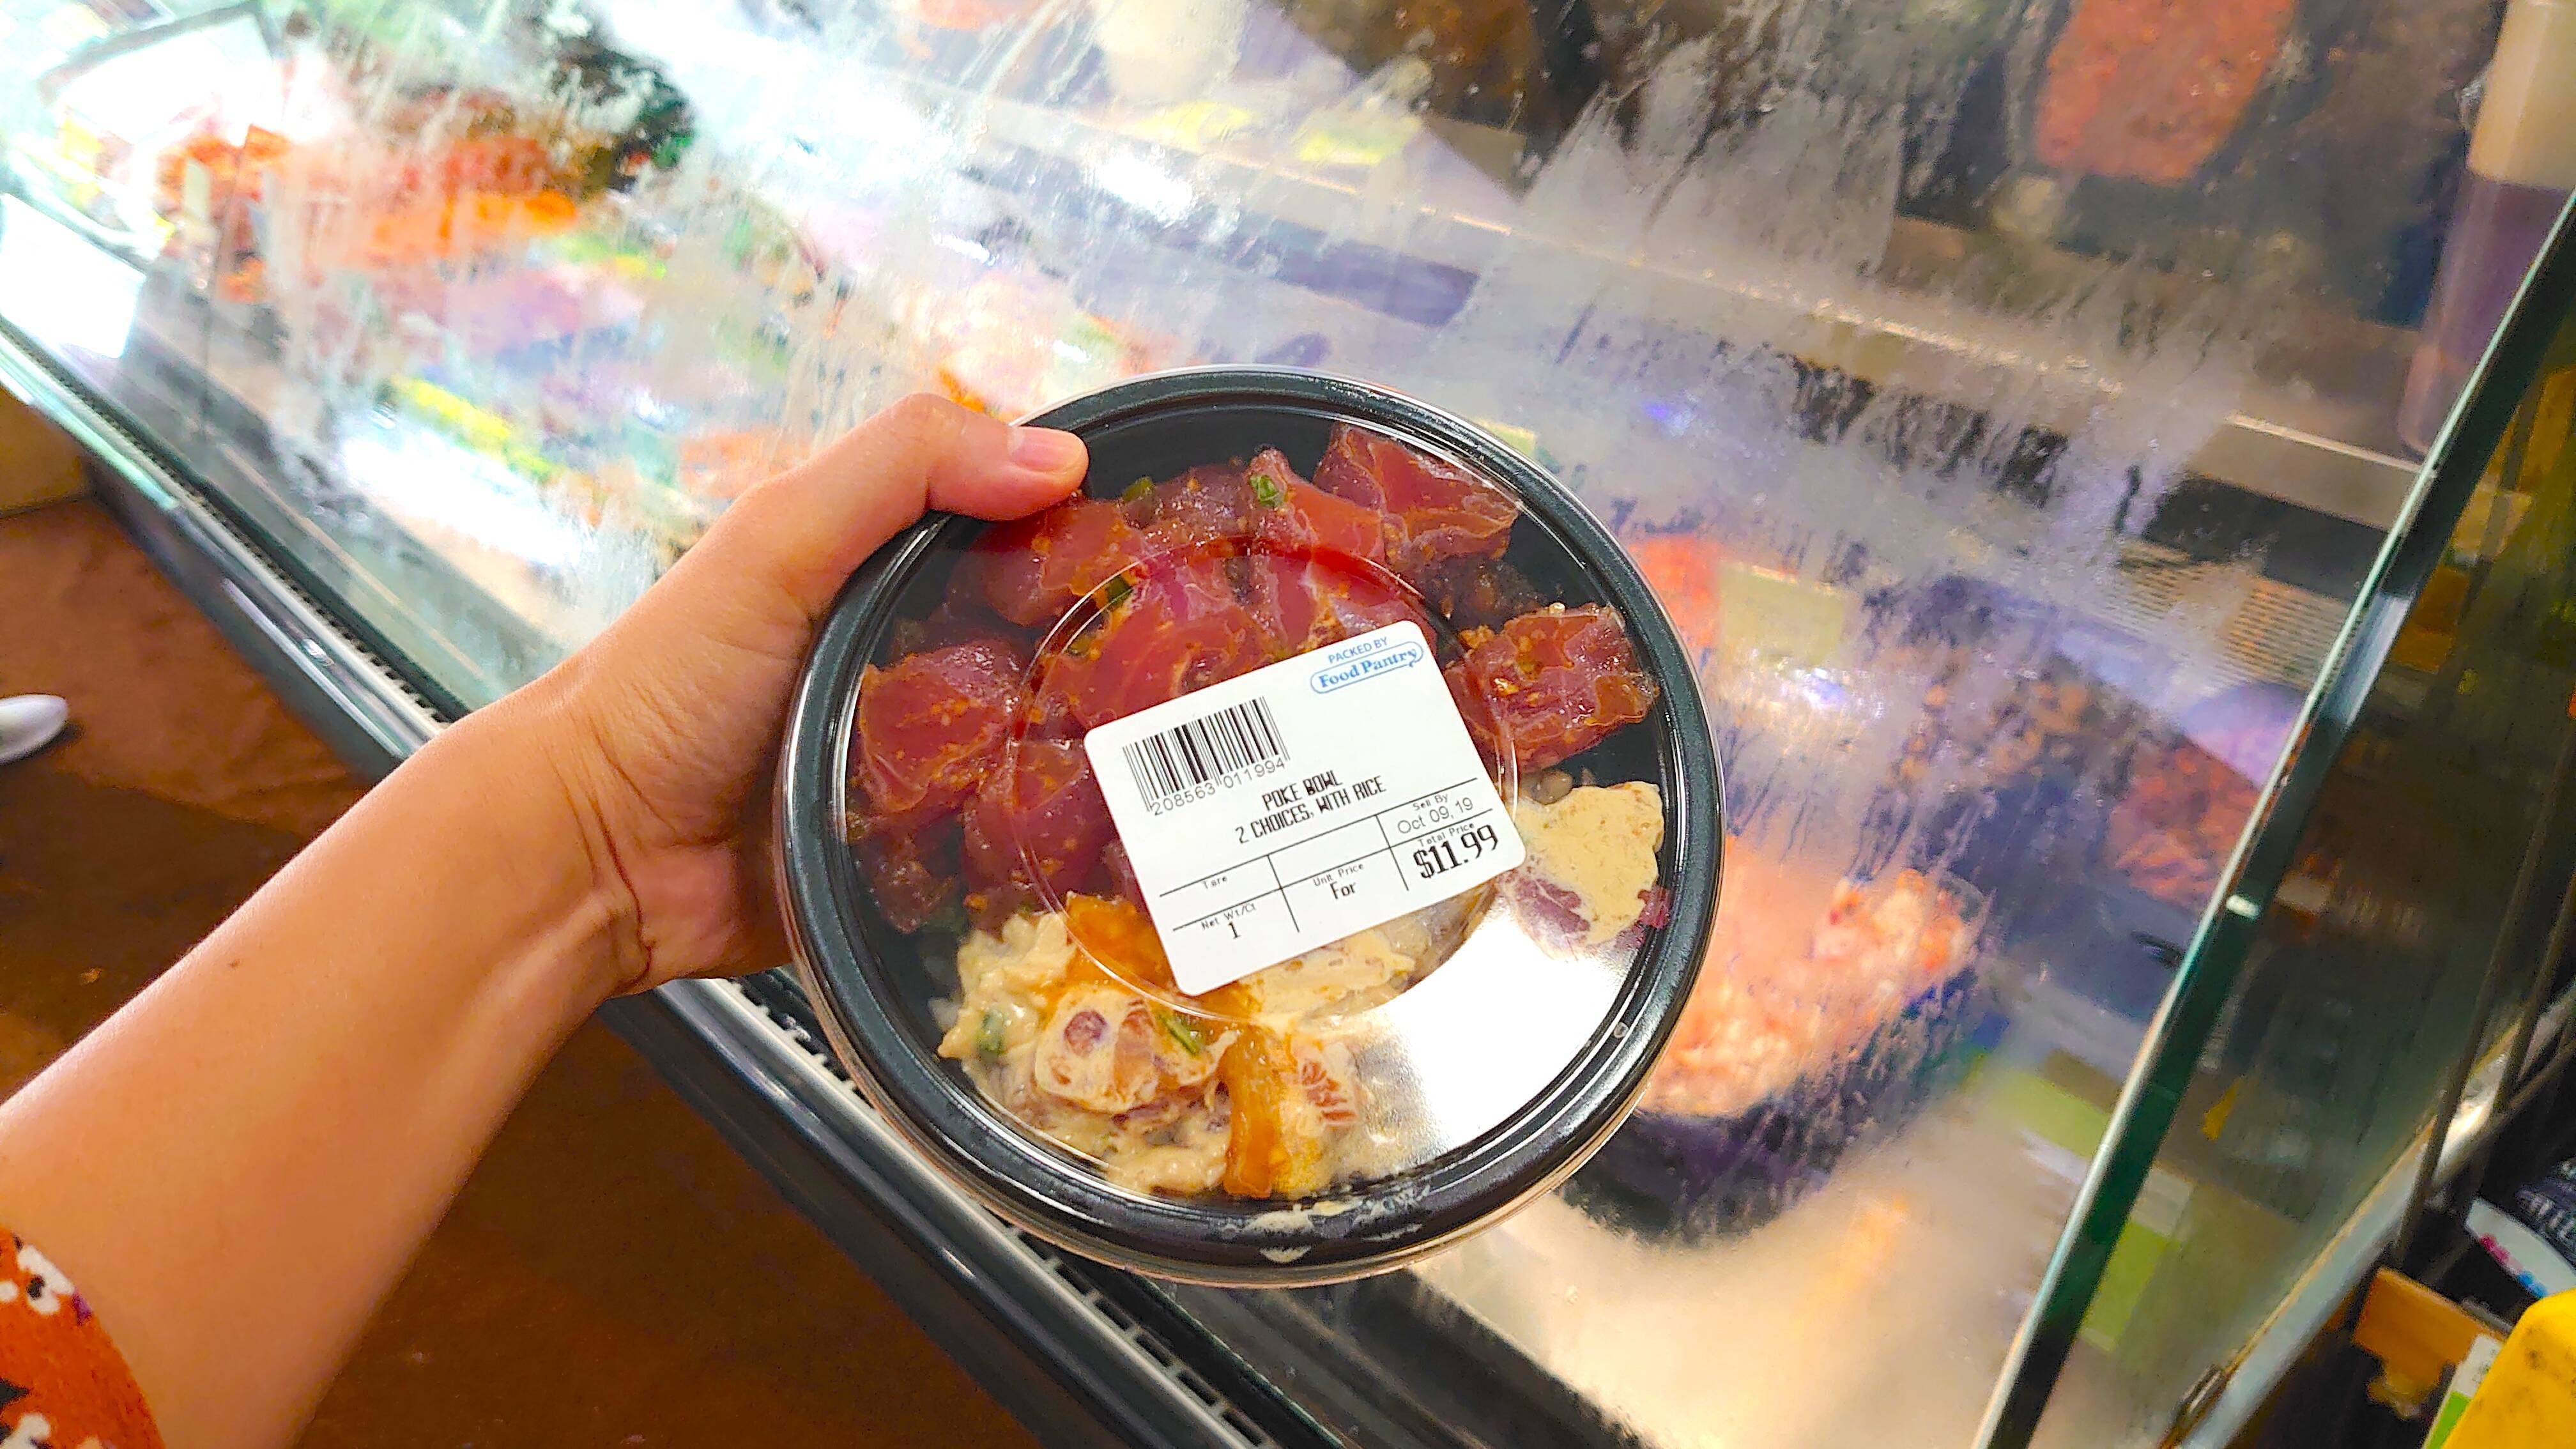 コンビニなのに 自分好みの海鮮丼をテイクアウトできる ハワイ ポキ丼 文化に感動した話 19年10月19日 エキサイトニュース